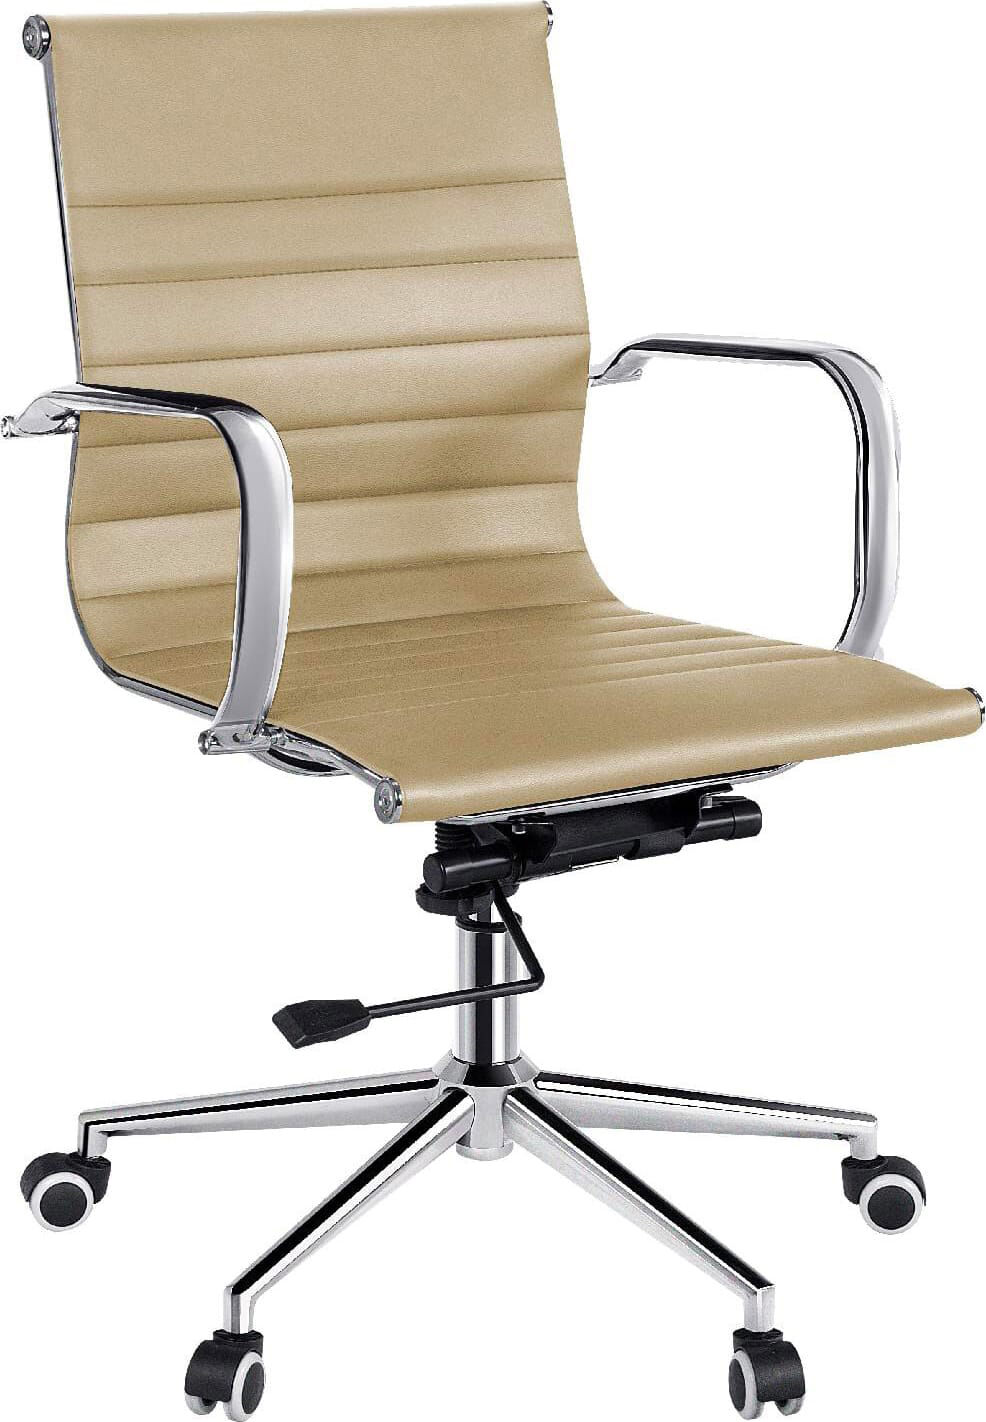 icon space hw61982be sedia ergonomica ufficio sedia da scrivania operativa con rotelle e braccioli girevole e regolabile in altezza colore beige - hw61982be